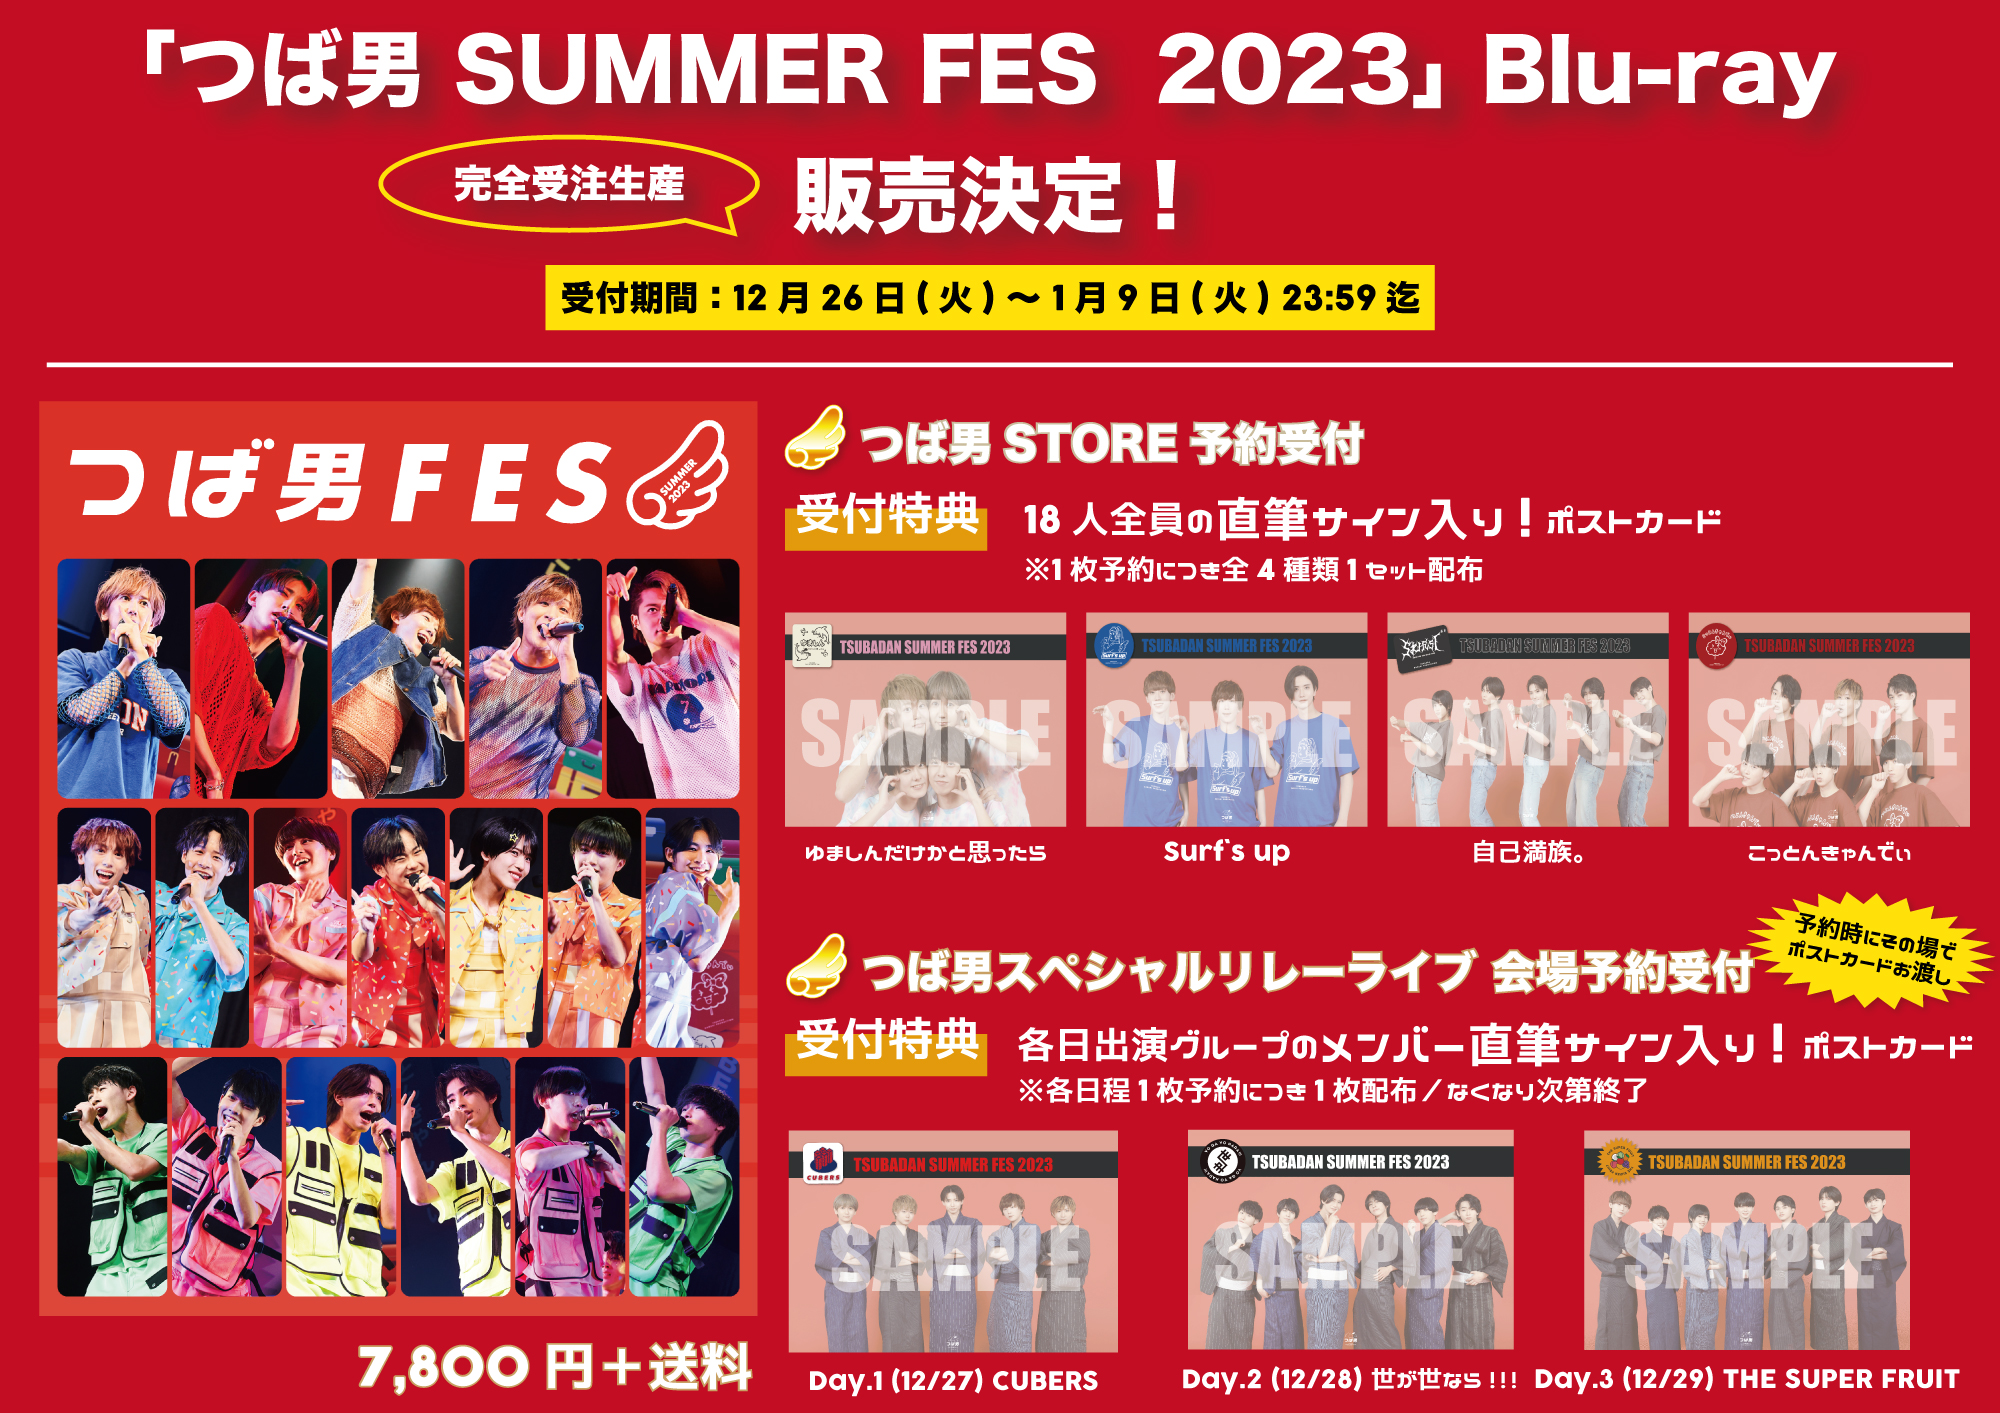 【BIG NEWS】2023年8月6日(日)開催「つば男 SUMMER FES 2023」Blu-rayが完全受注生産で販売決定！